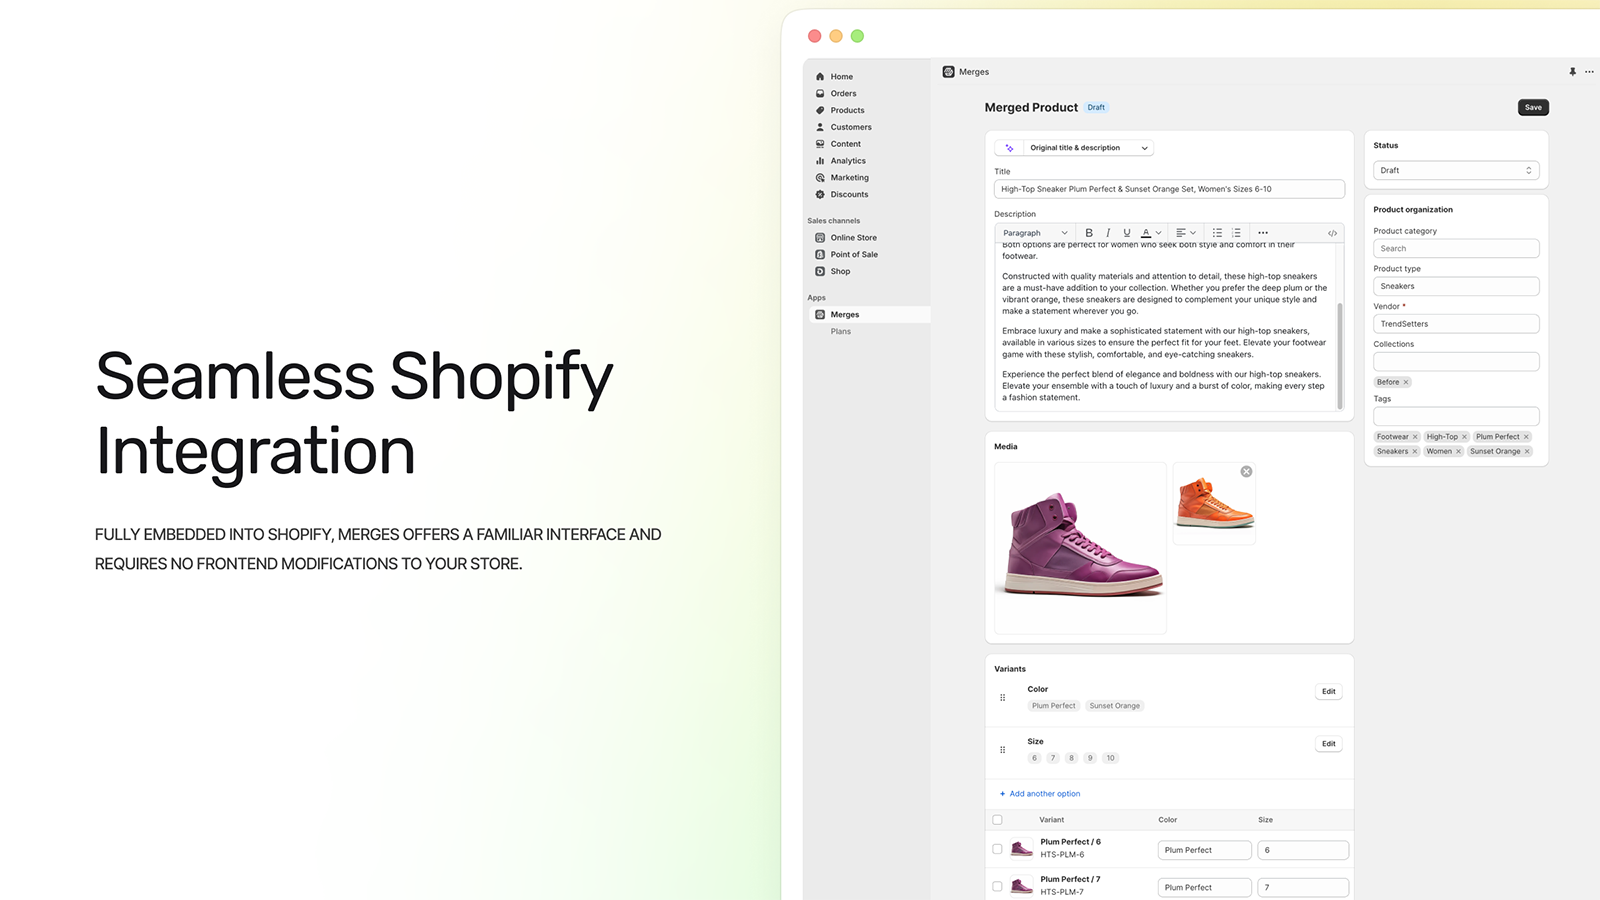 Aplicación totalmente integrada en la experiencia de Shopify